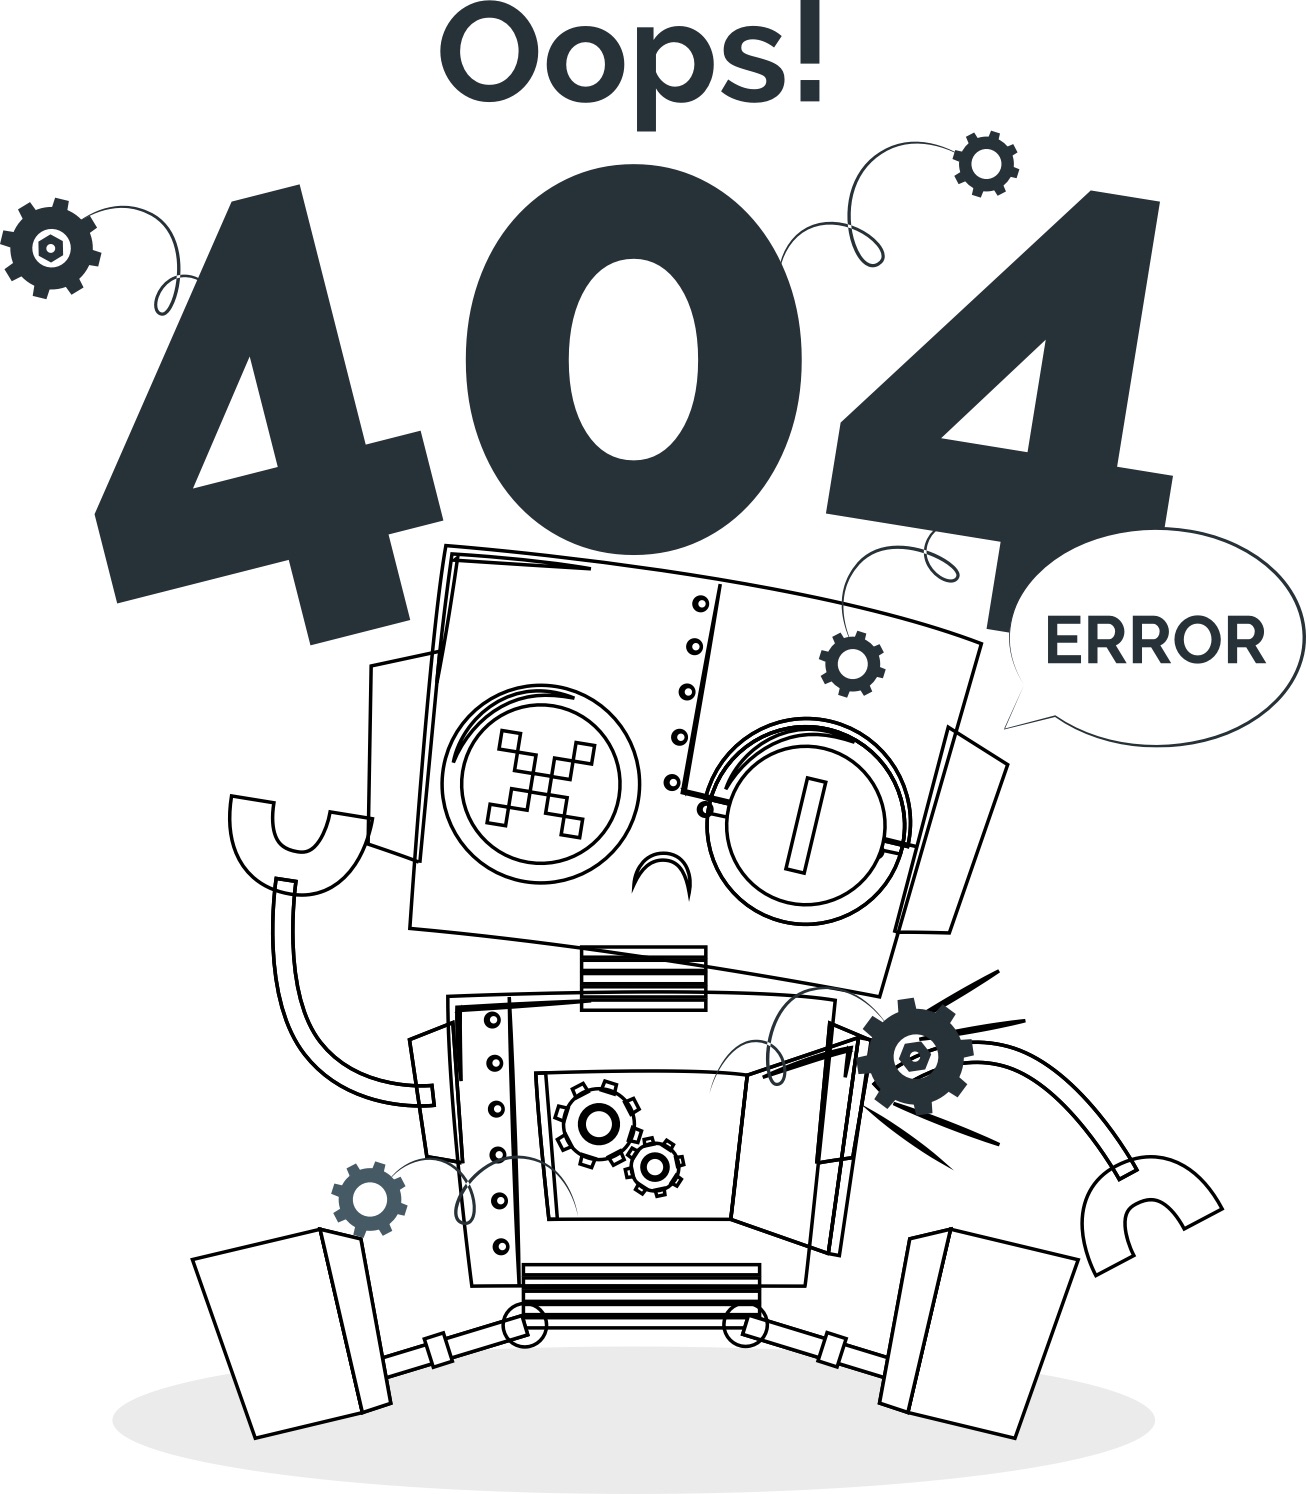 Oops! 404 error